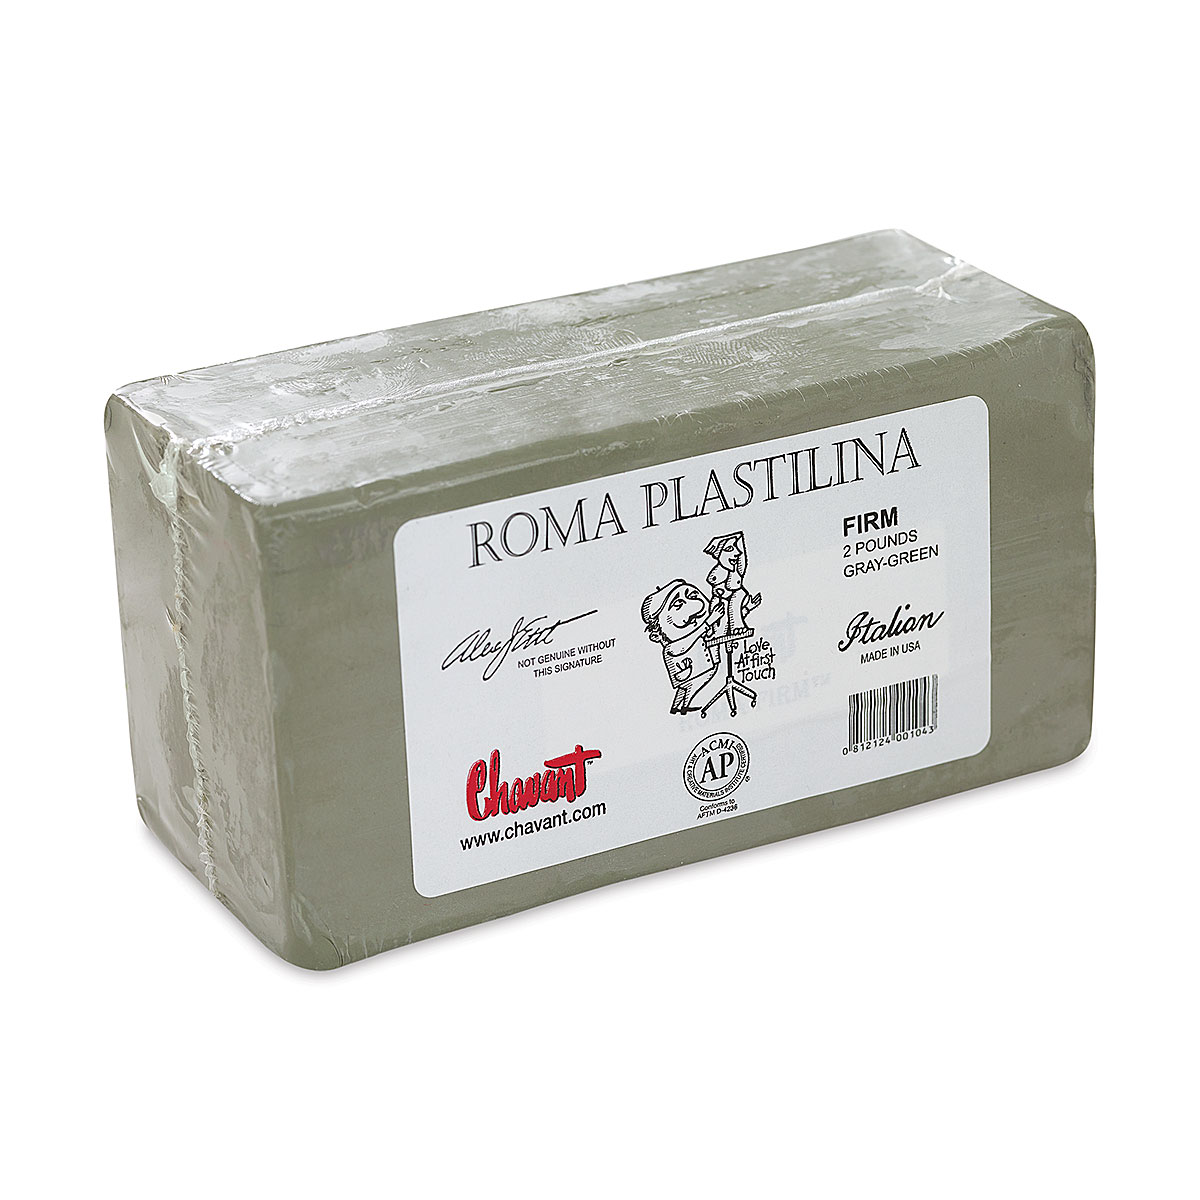 roma plastilina modeling clay